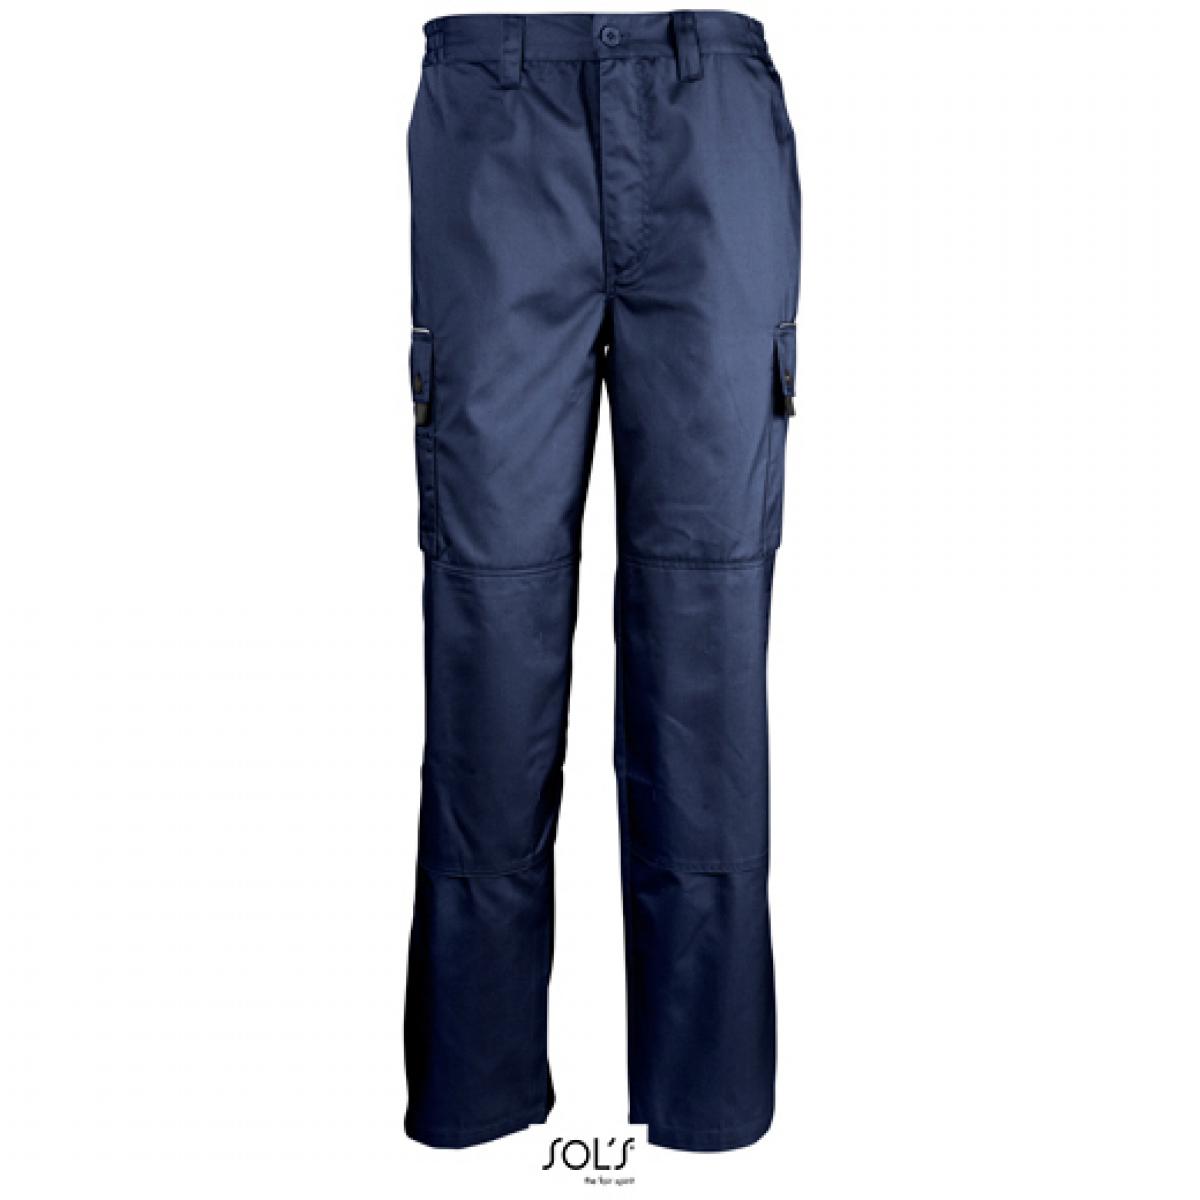 Hersteller: SOLs ProWear Herstellernummer: 80600 Artikelbezeichnung: Herren Workwear Trousers Active Pro / Waschbar bis 60 °C Farbe: Navy